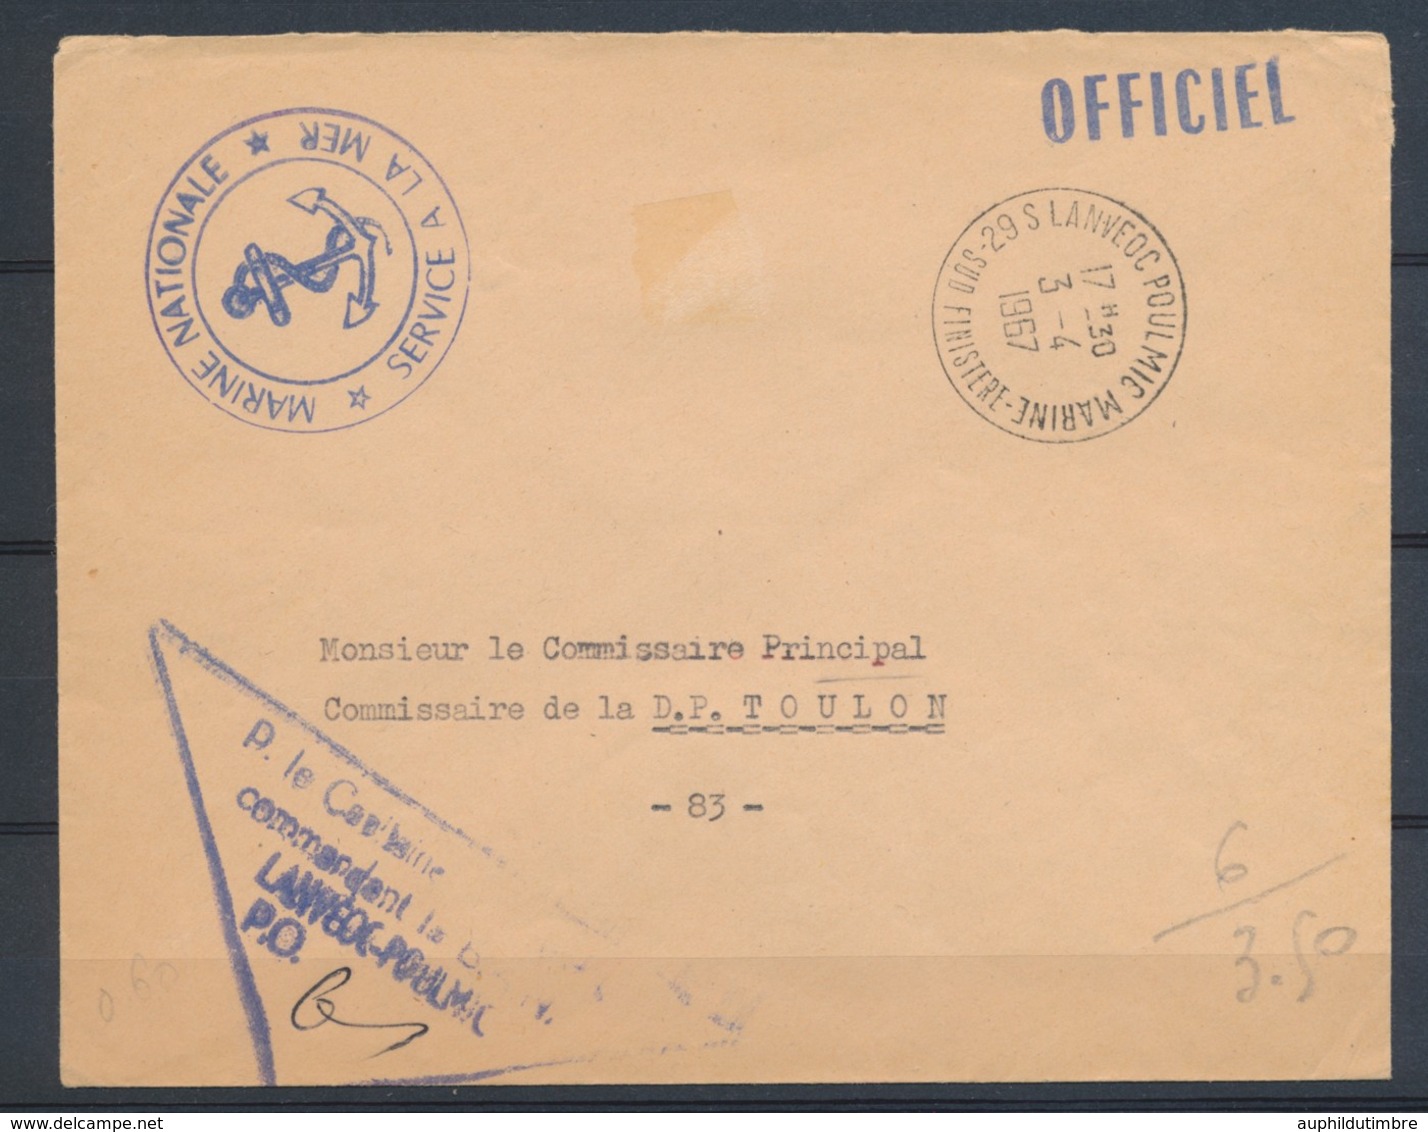 1967 Enveloppe En FM MARINE OFFICIEL 29 S LANVEOC POULMIC Pr Toulon N1822 - Lettere In Franchigia Civile